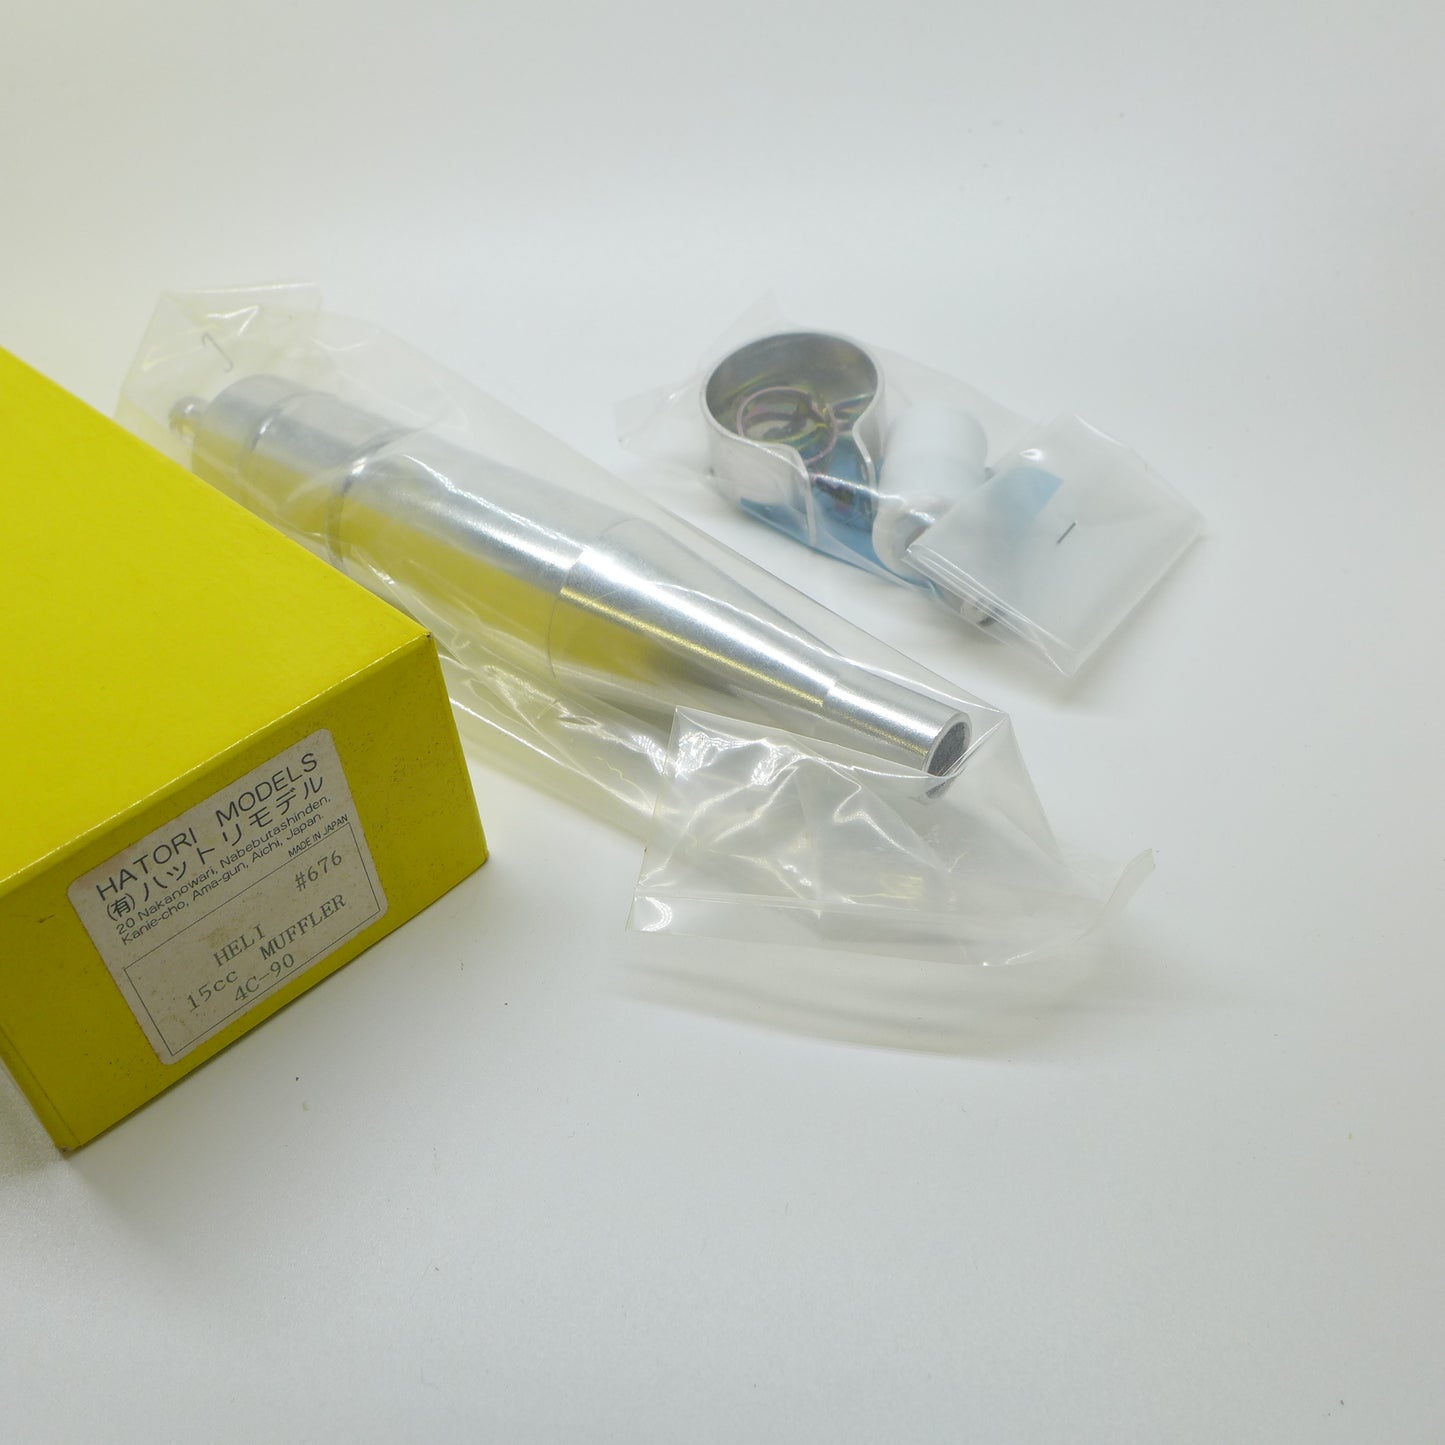 Hatori Schalldämpfer / Resorohr #676 15CC 4C-90 Muffler (Made in Japan)